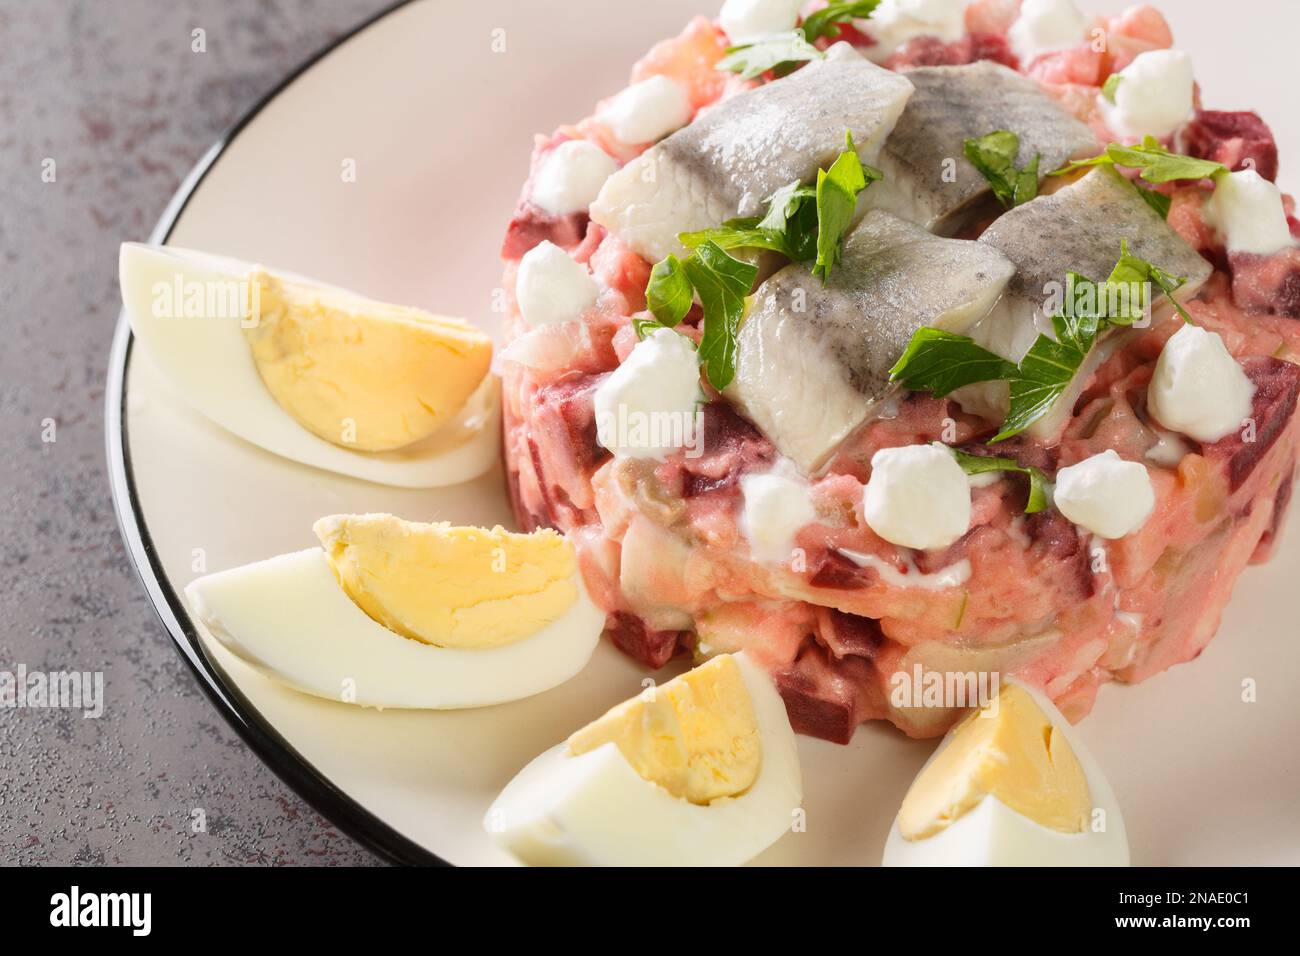 Porzione di insalata di verdure scandinave con aringhe, barbabietole, mele, patate e cipolla in un piatto sul tavolo. Orizzontale Foto Stock